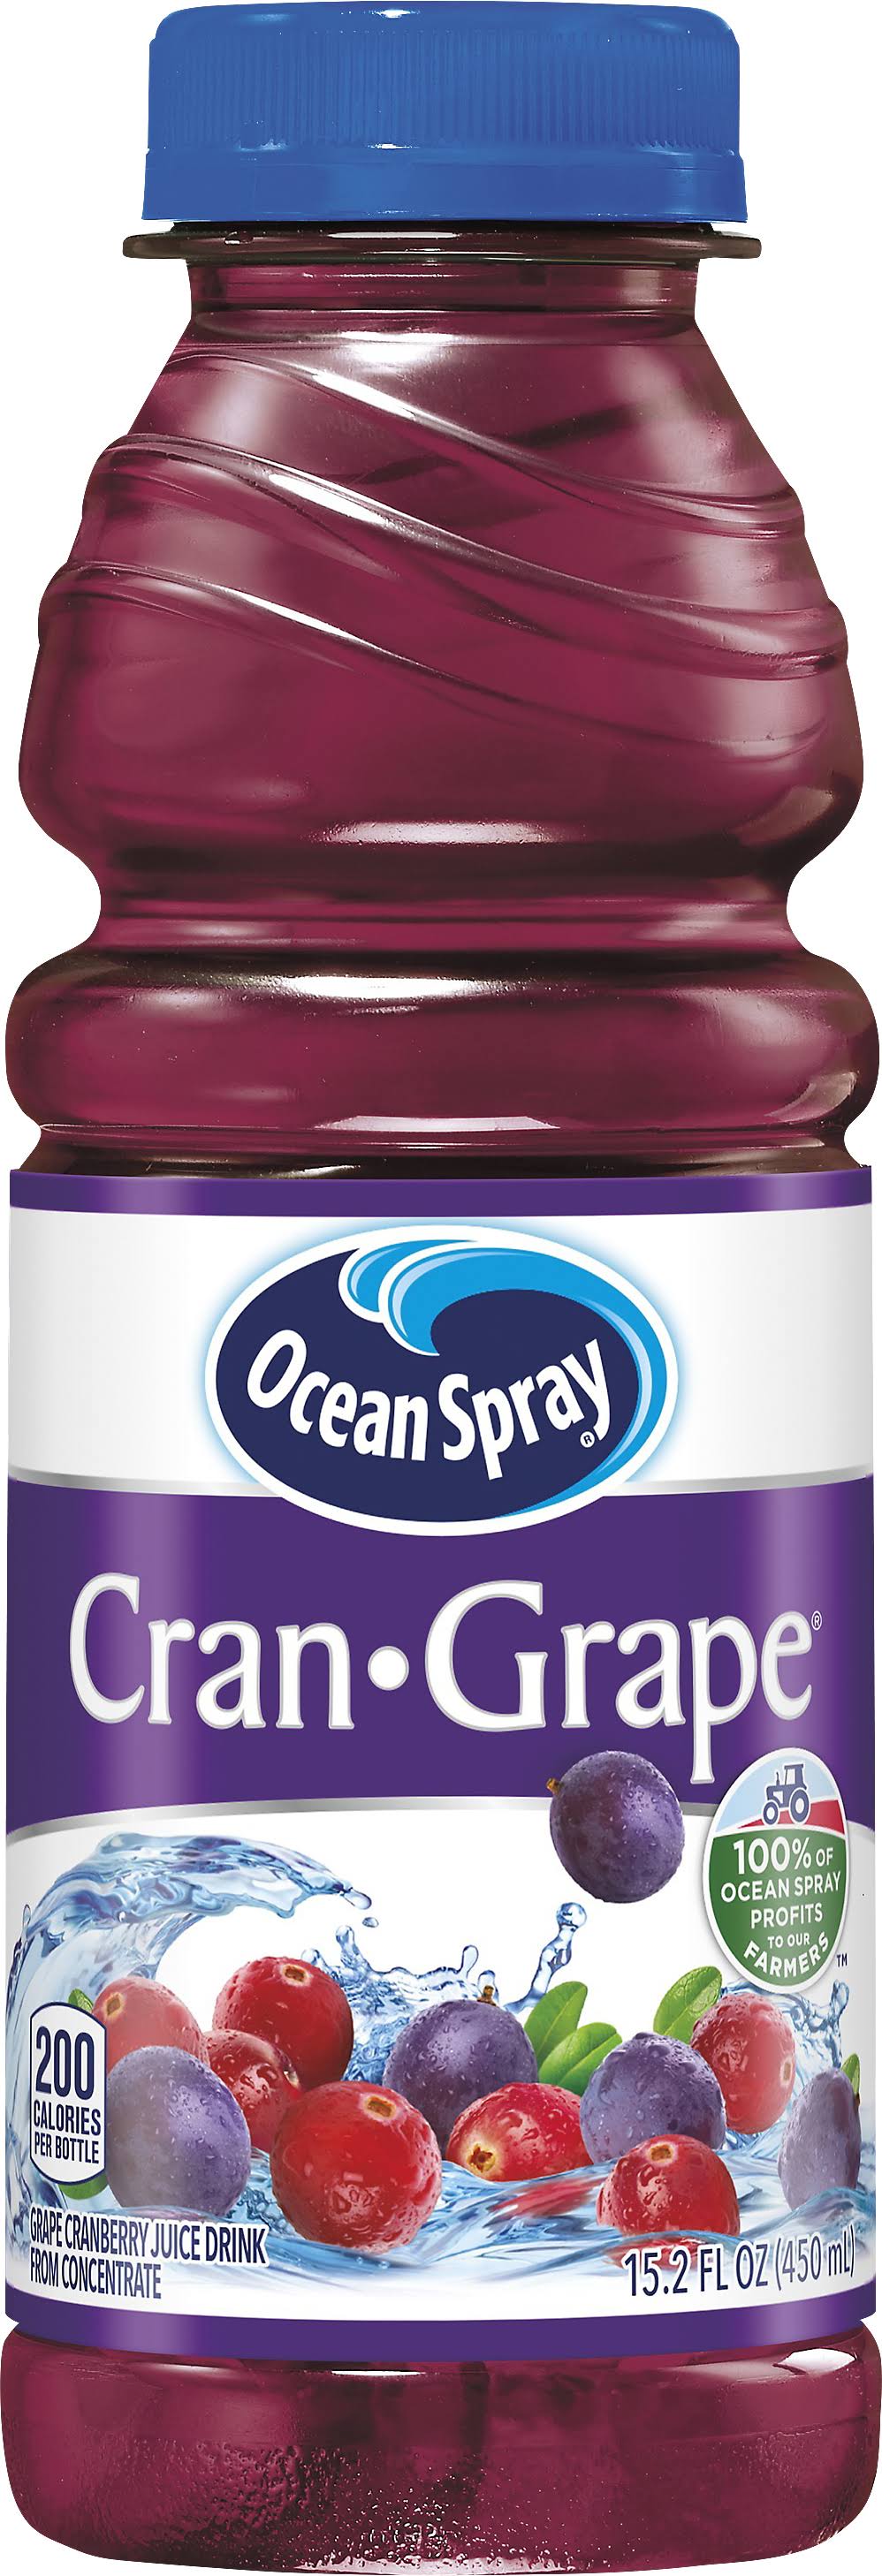 Ocean Spray Cran Grape Juice Drink - 15.2 oz